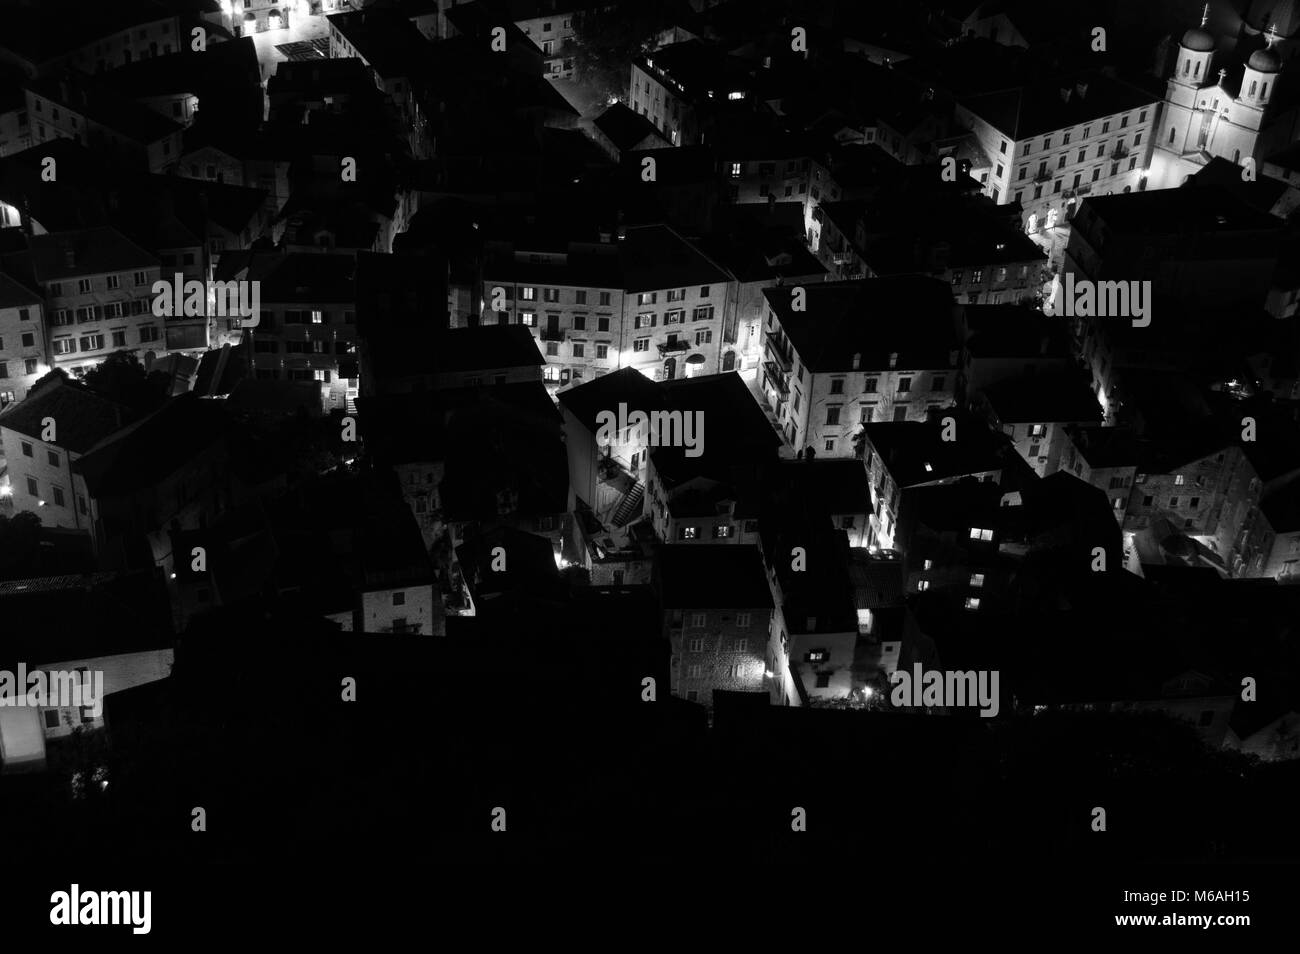 Vieille ville de Kotor, vu à partir de la recherche de nuit, Monténégro Banque D'Images